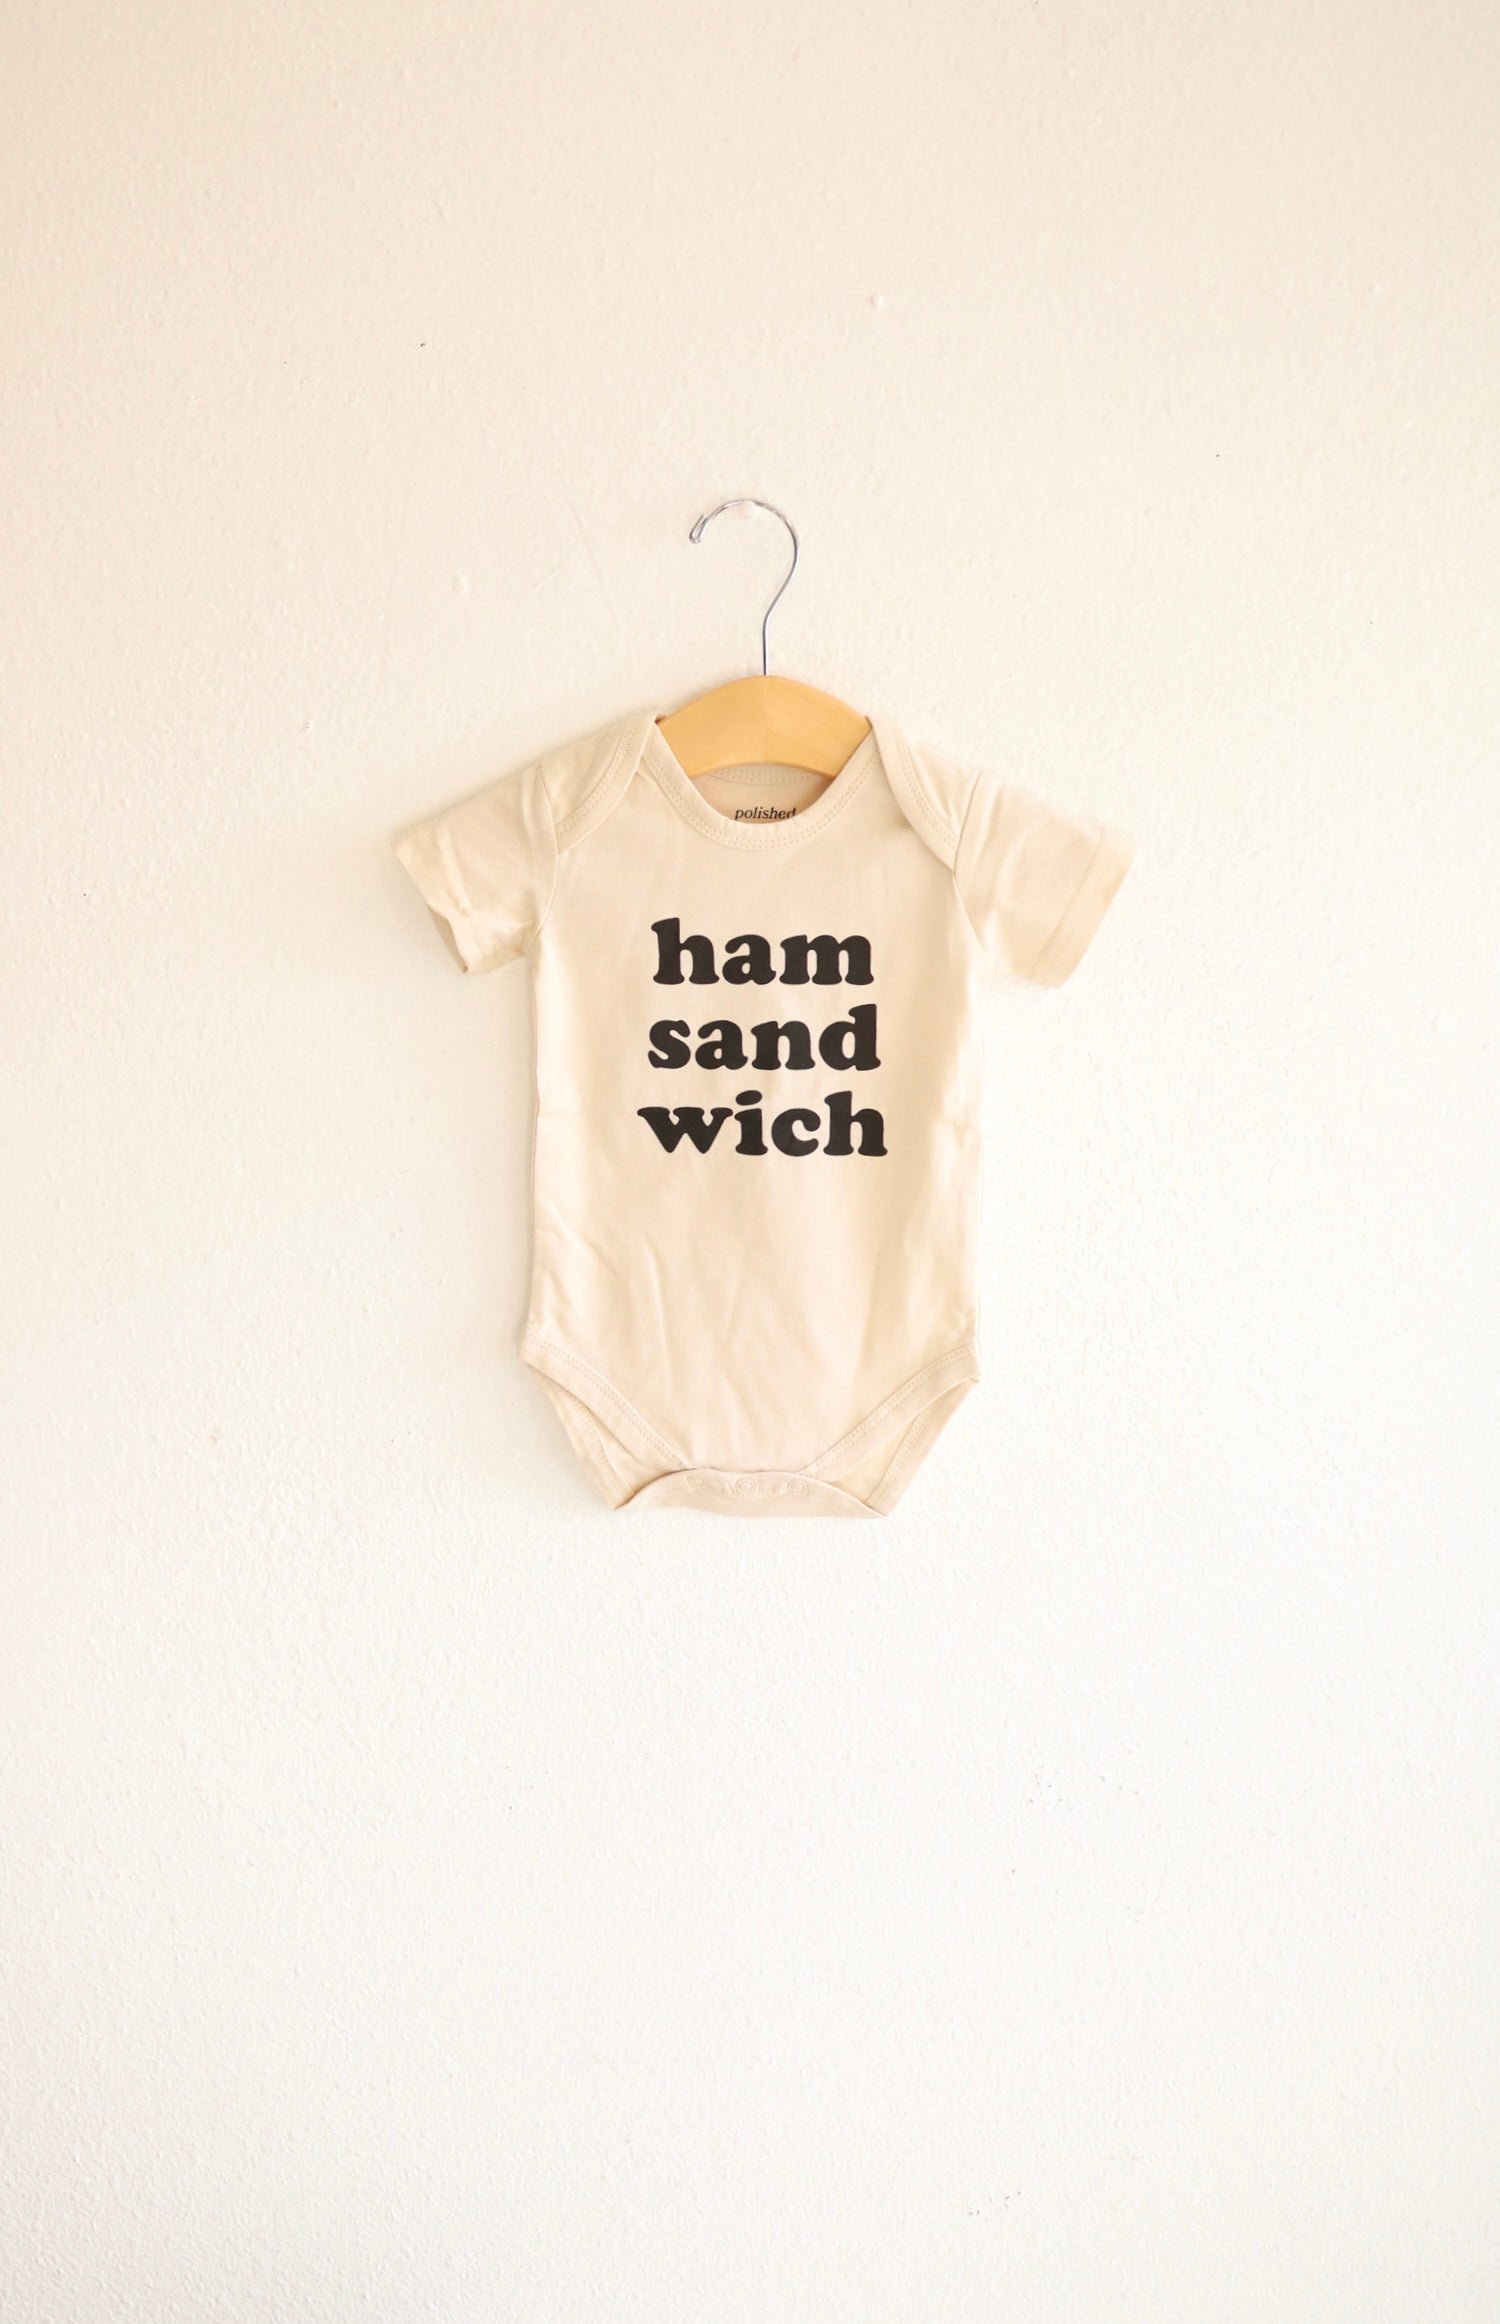 Ham Sandwich Organic Cotton Baby Onesie